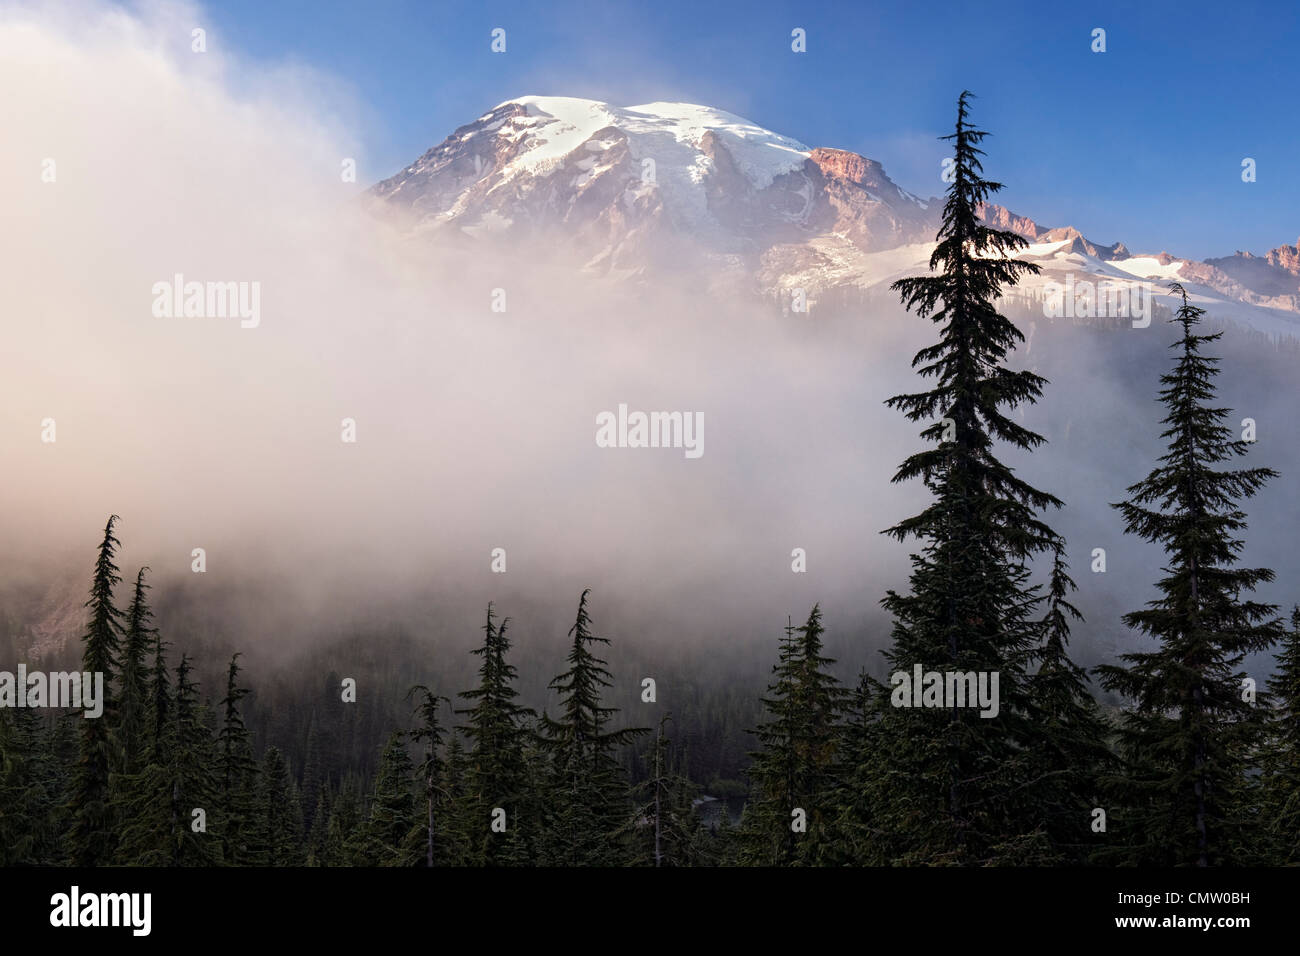 Le plus haut sommet de Washington, Mt Rainier émerge du brouillard de l'été dans le Parc National de Mount Rainier. Banque D'Images